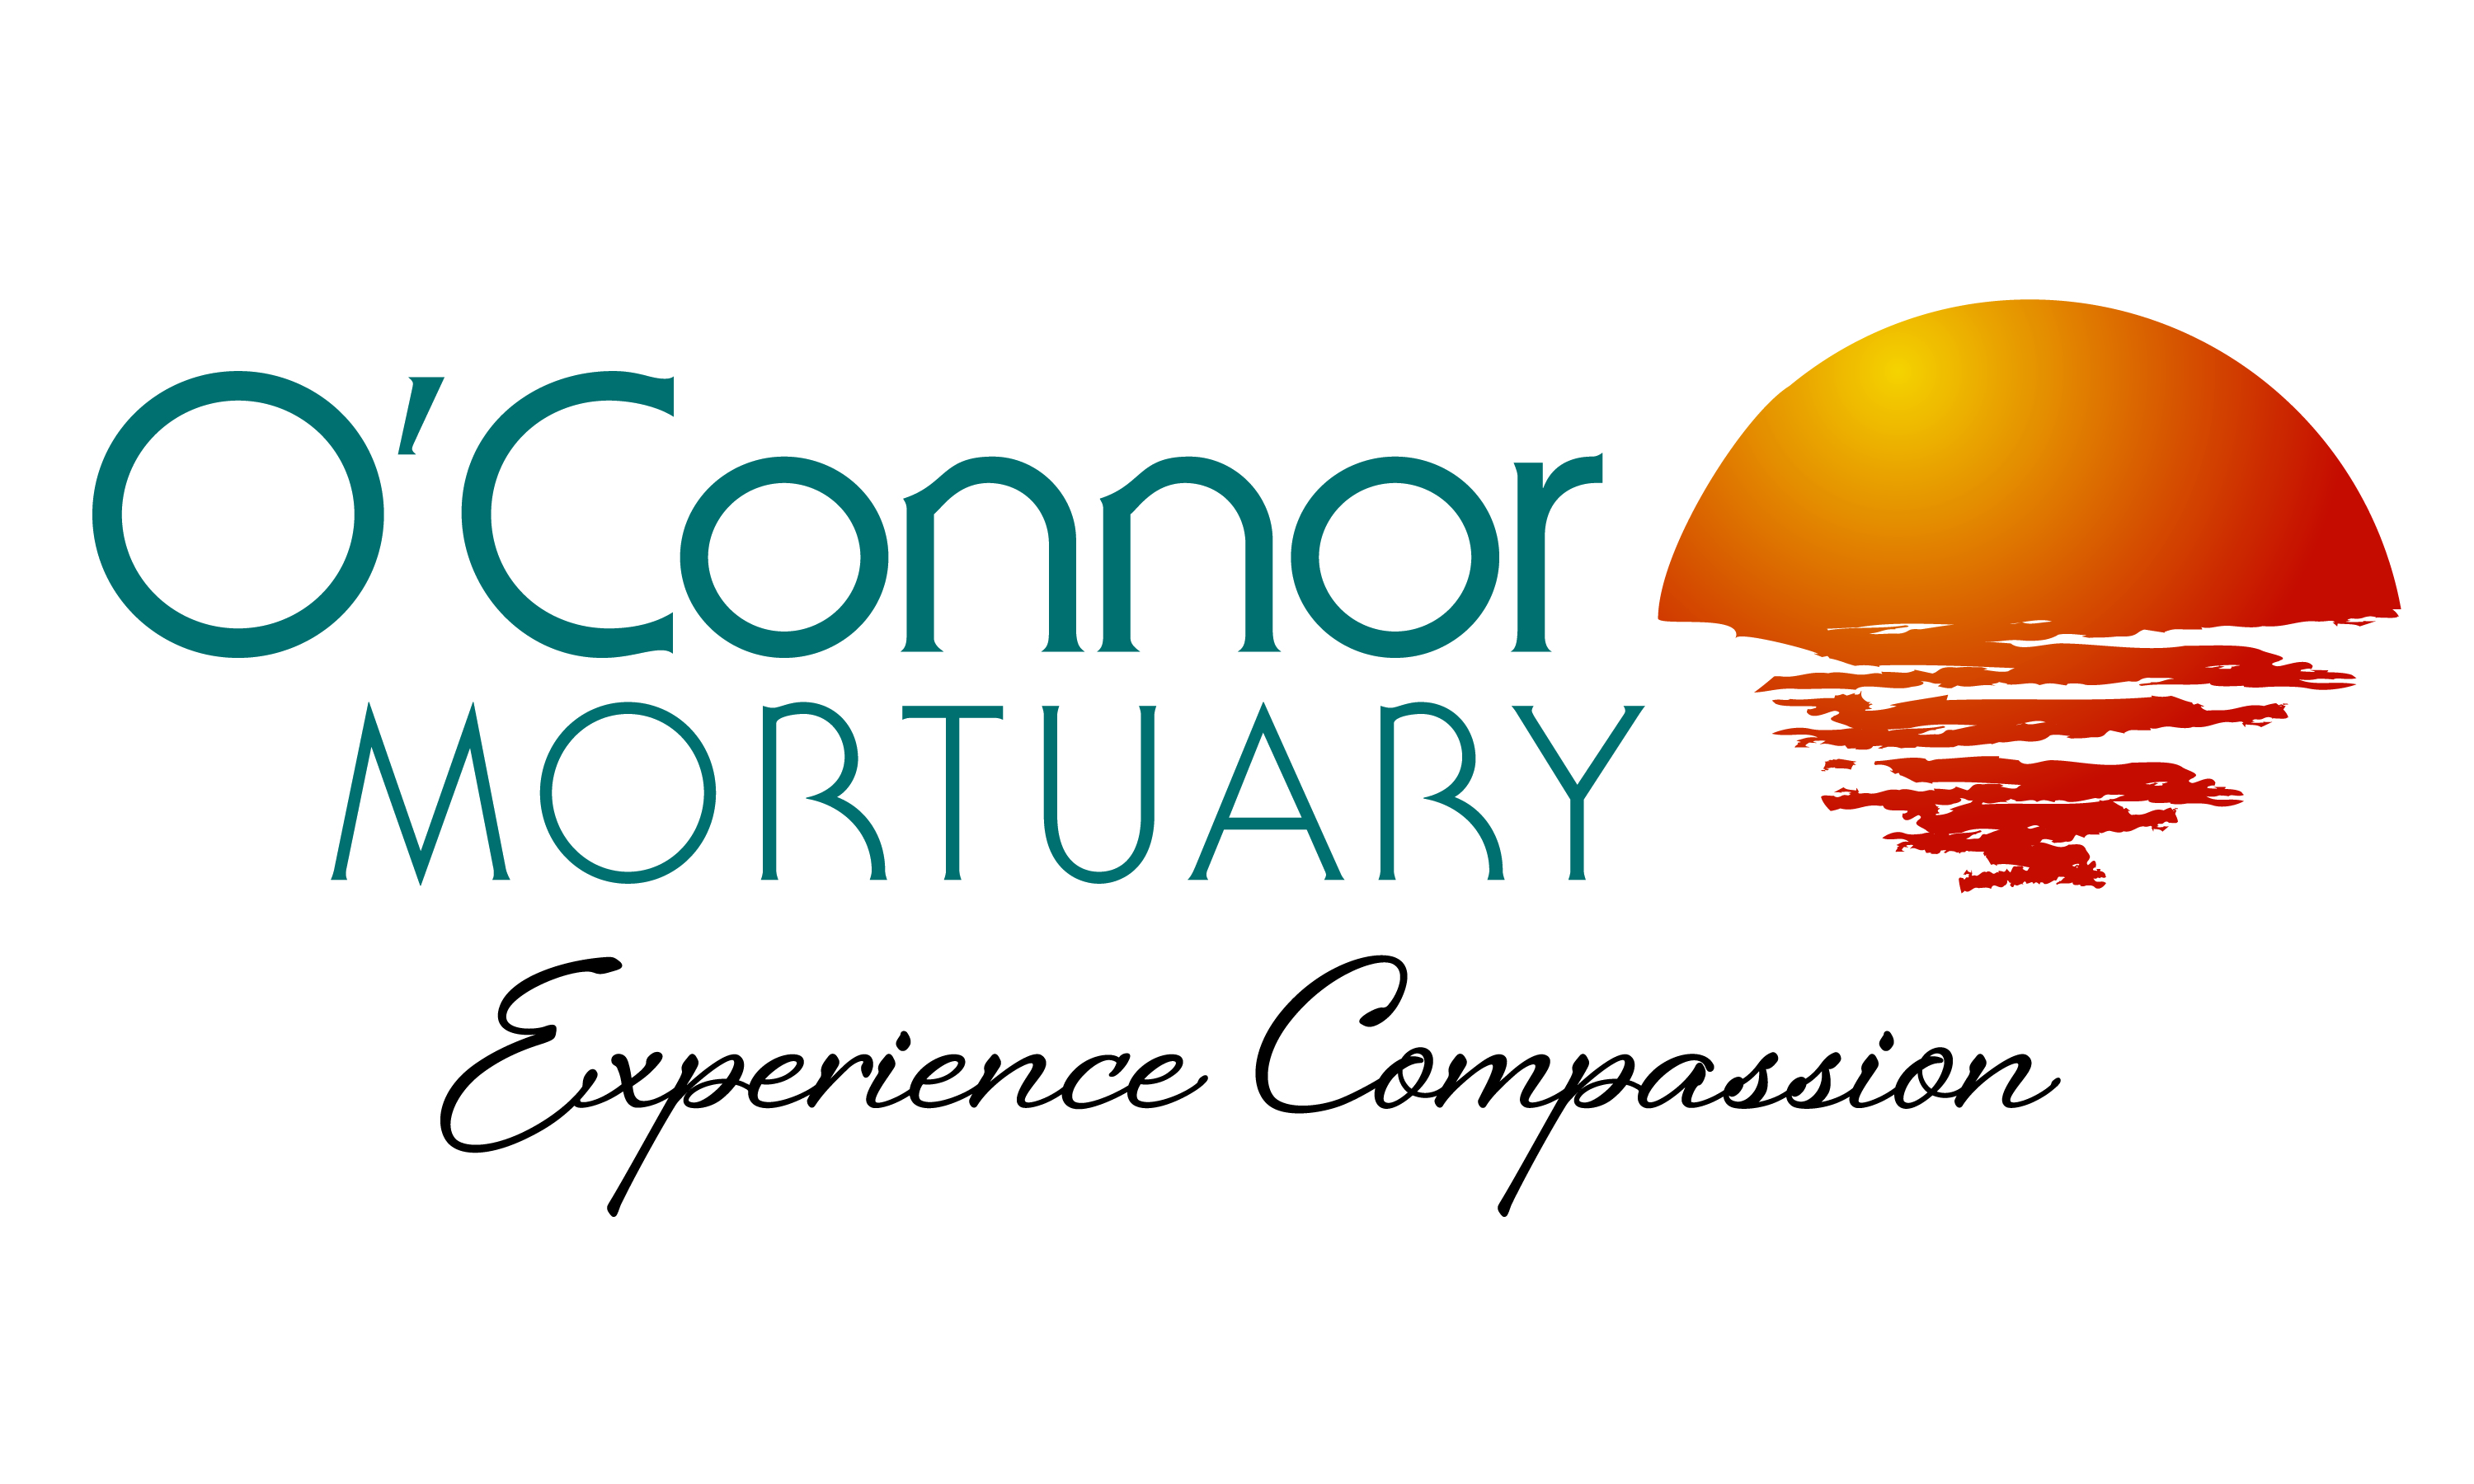 O'Connor Mortuary